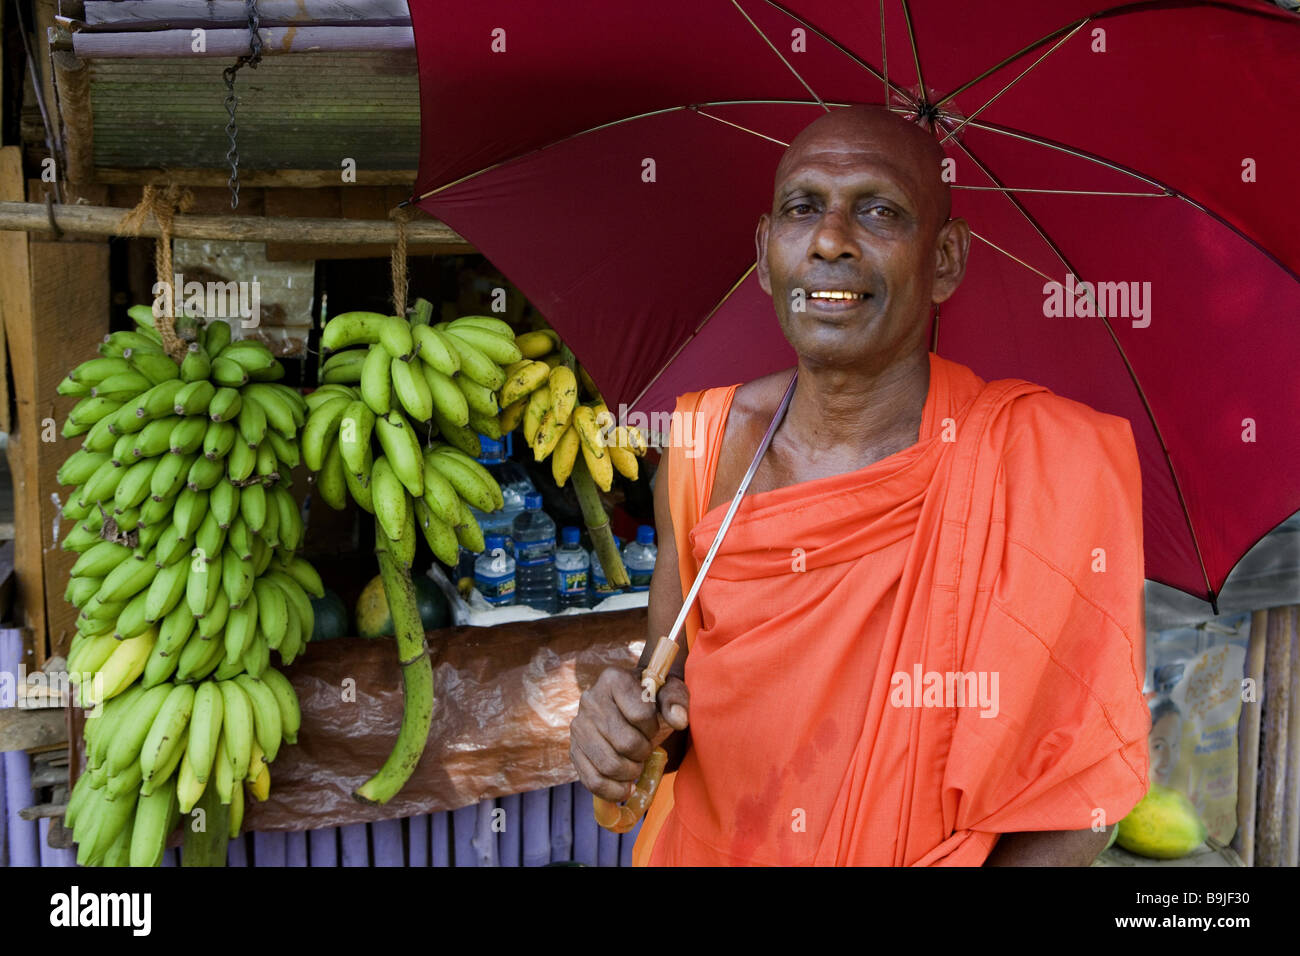 Sri Lanka-Marktstand Mönch Regenschirm Asien Südasien Leute Mann Gläubiger Kleid Kutte orange Regenschirm Sonnenschirm außerhalb symbol Stockfoto